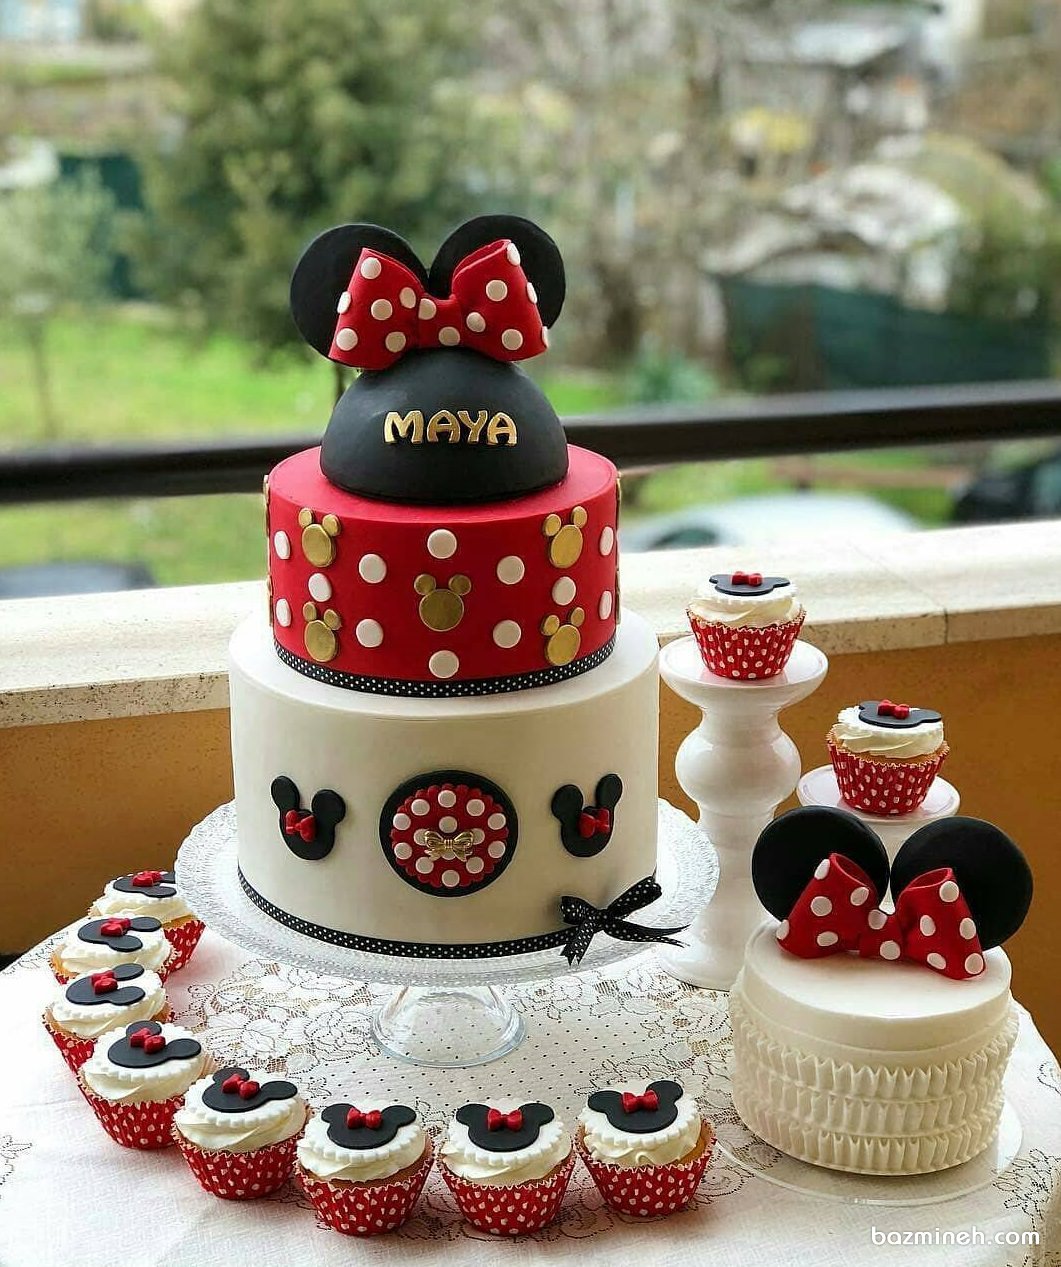 کیک، مینی کیک و کاپ کیک های جشن تولد دخترونه با تم مینی موس (Minnie Mouse)